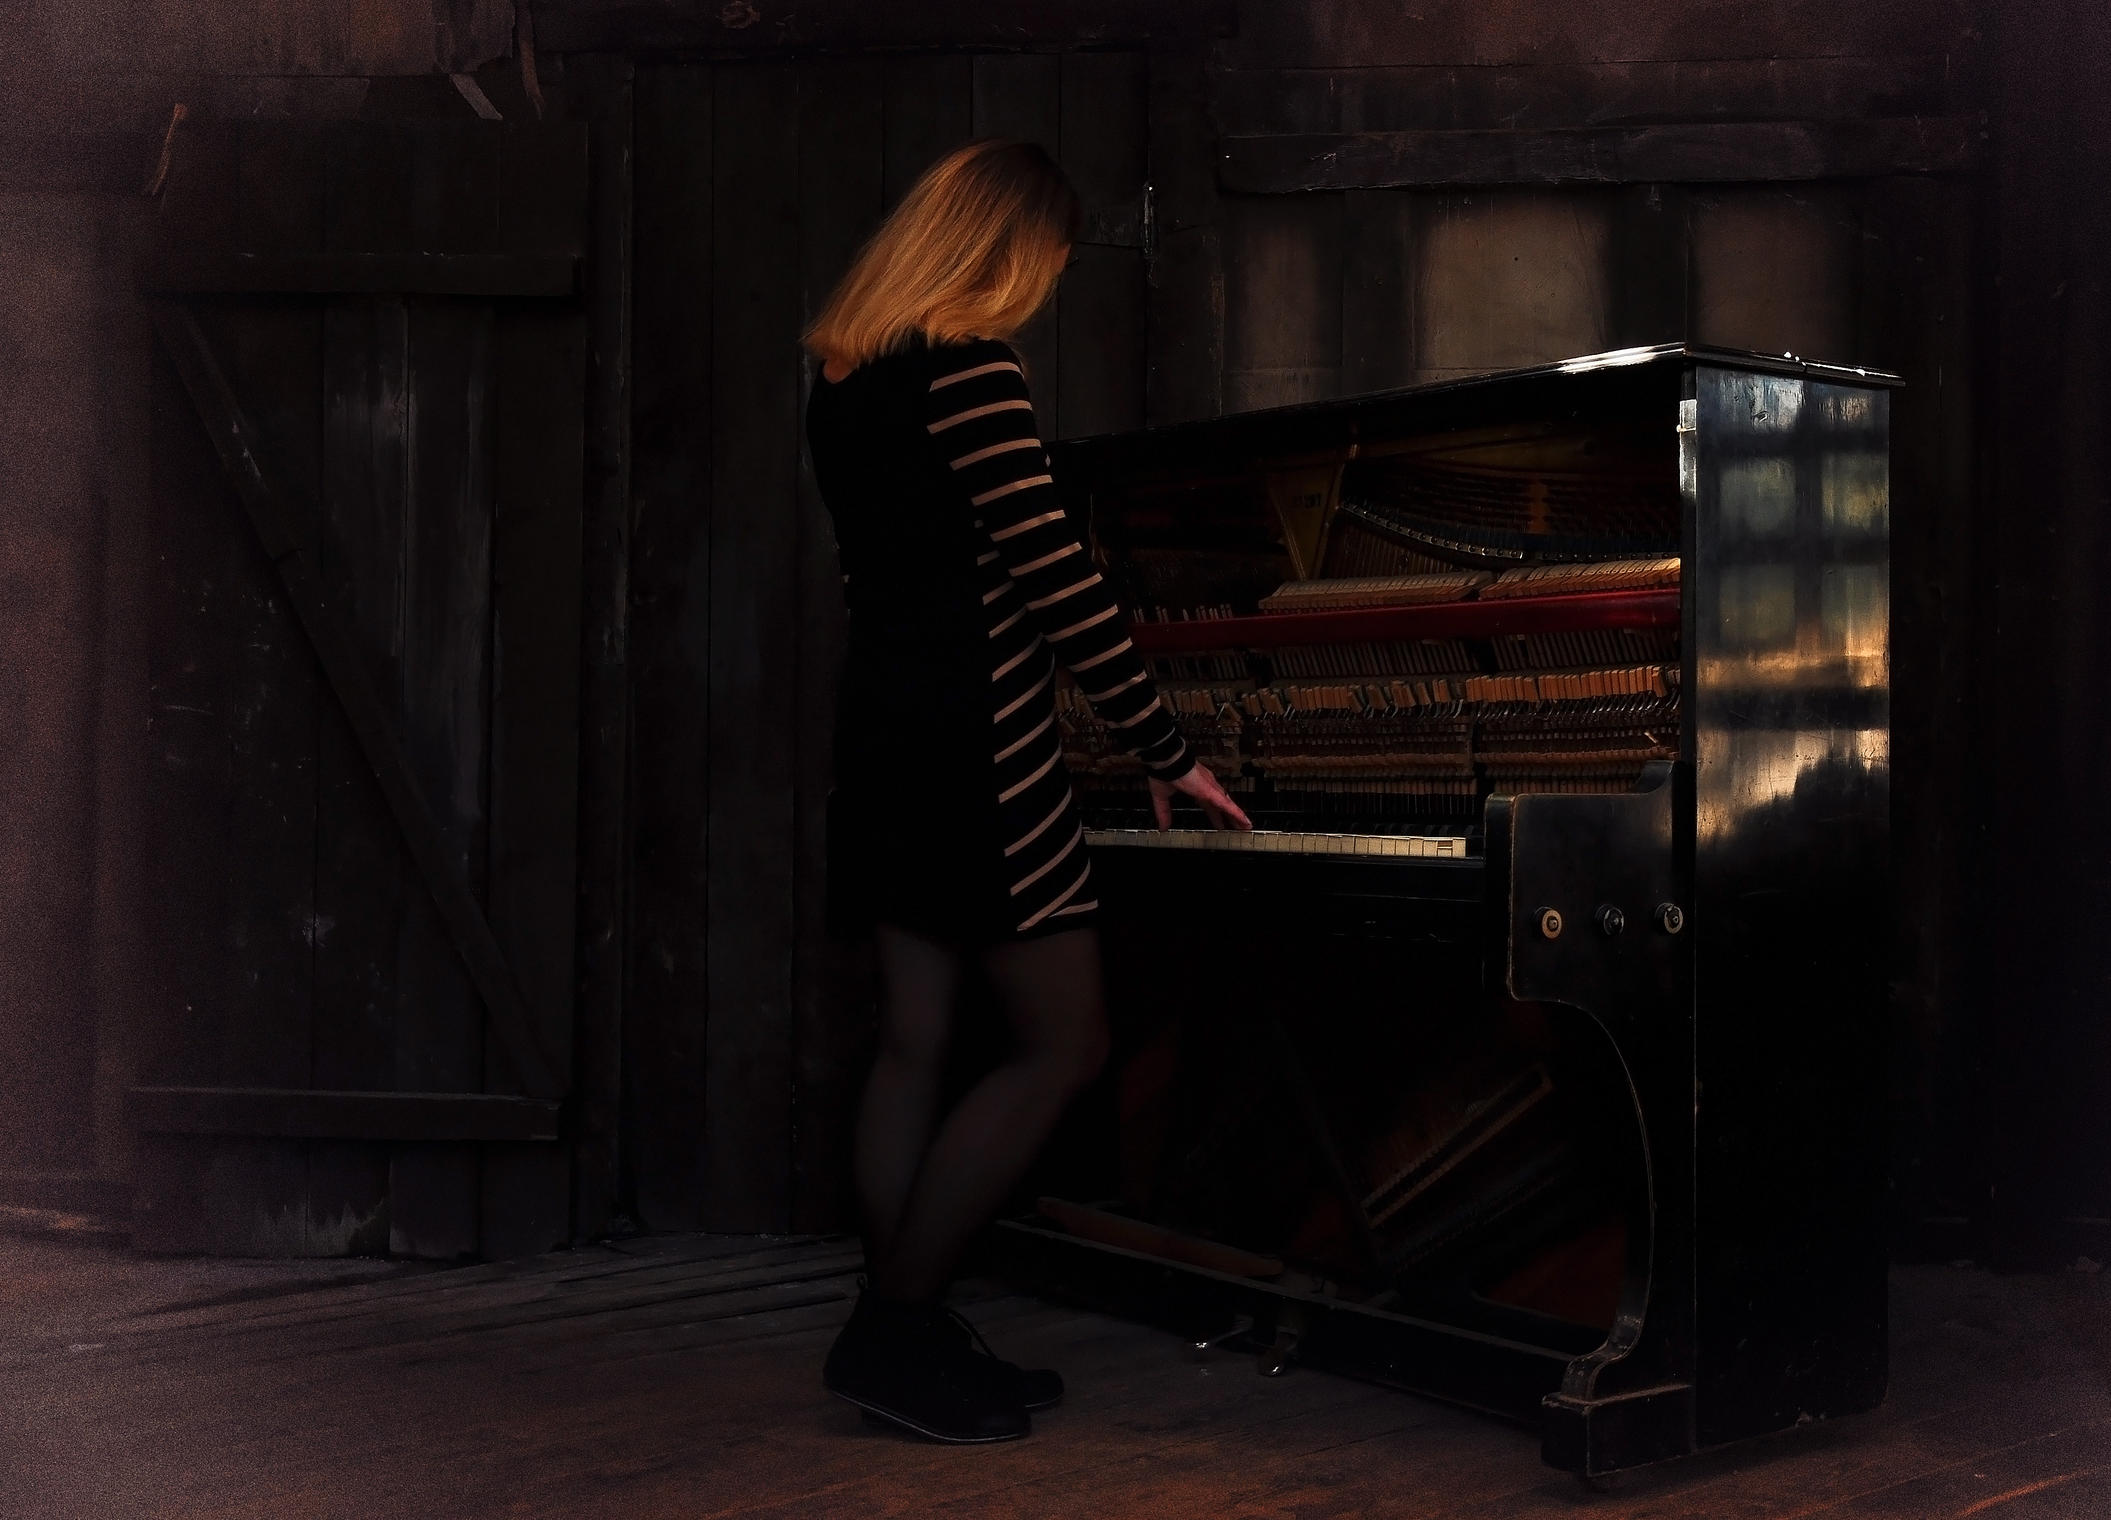 ФС: Старый рояль